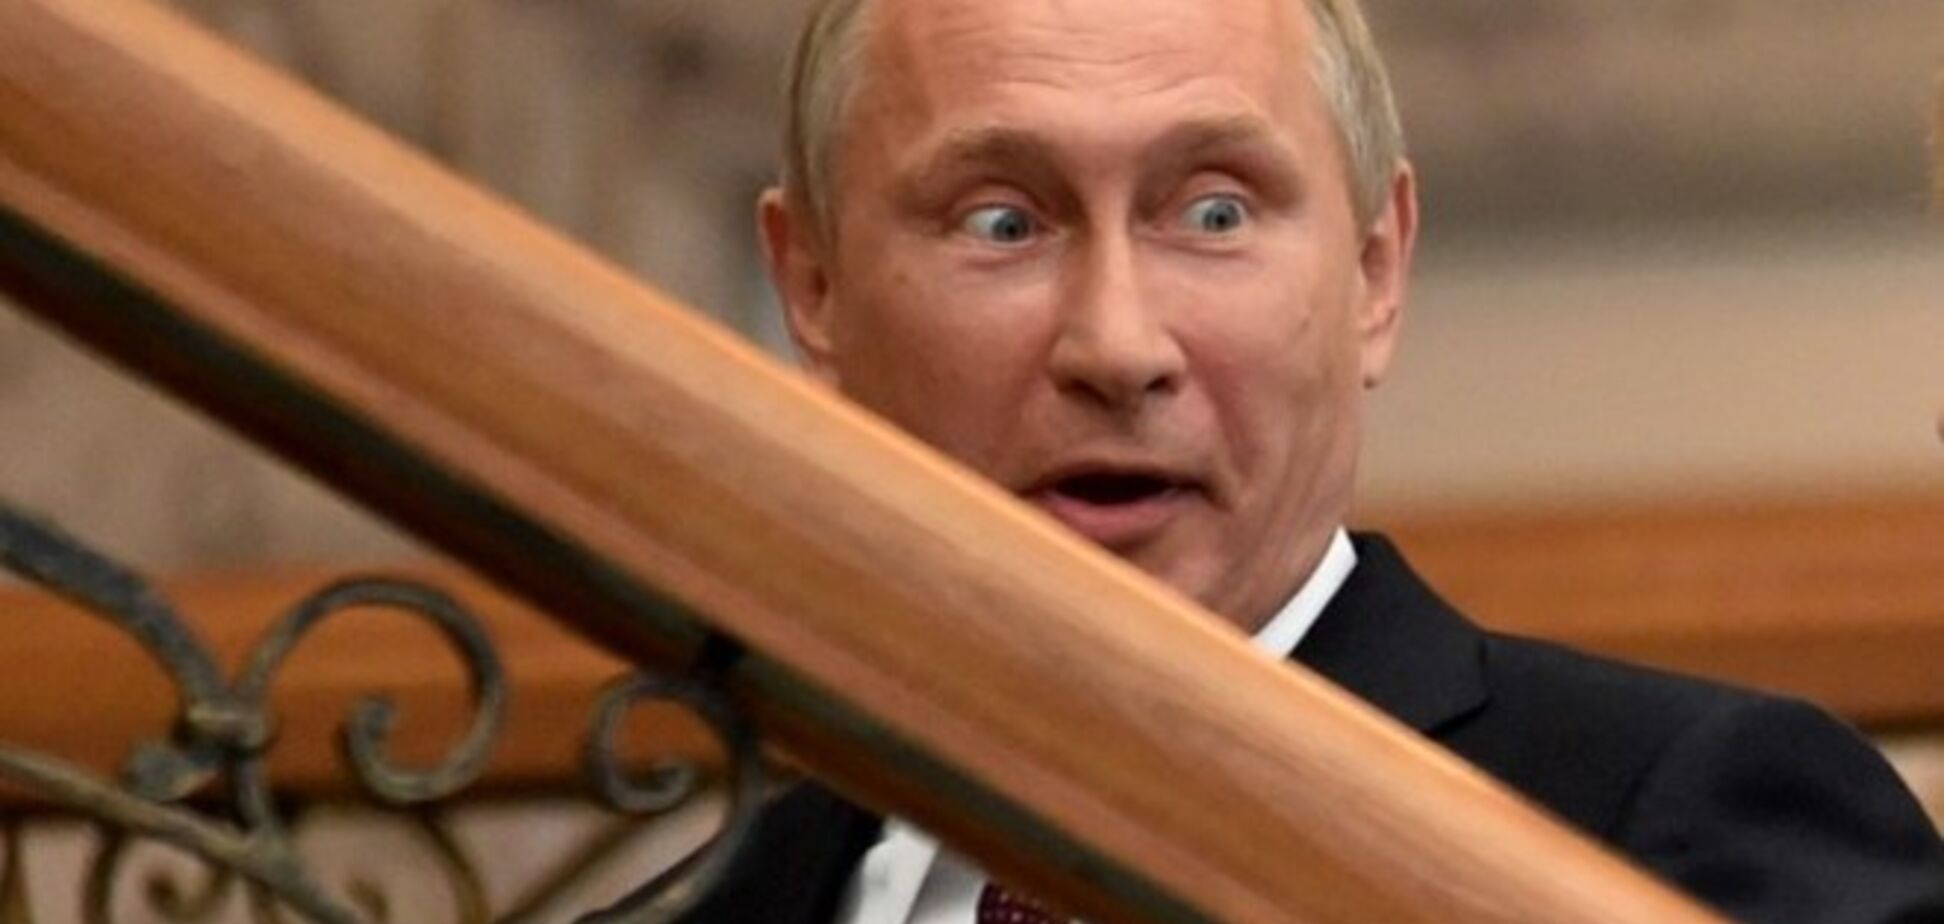 Путин посоветовал следить за его мимикой: 'не так страшен черт, как его малюют'